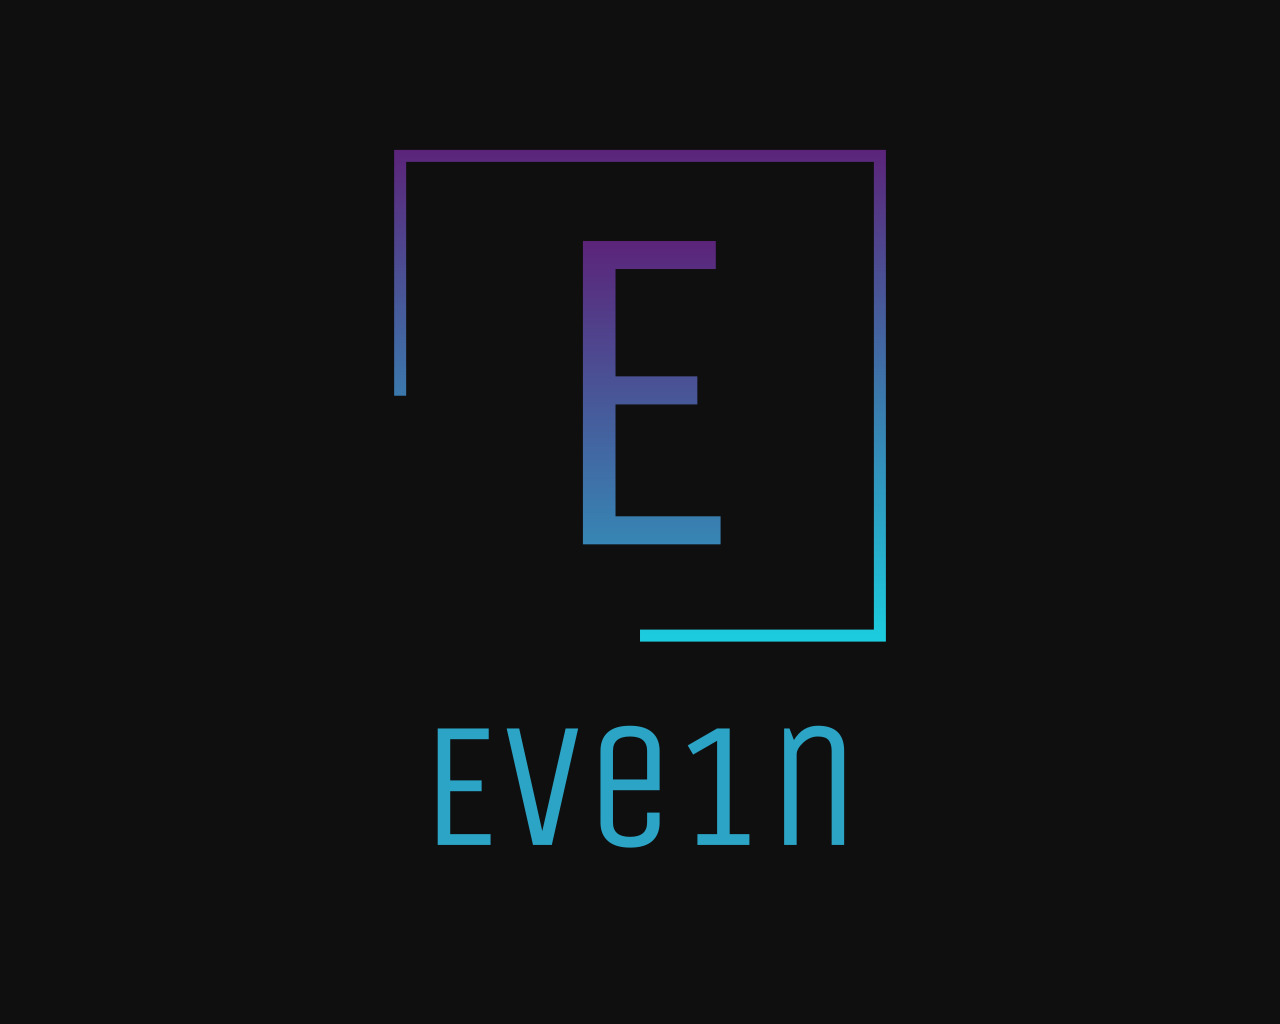 EVe1n